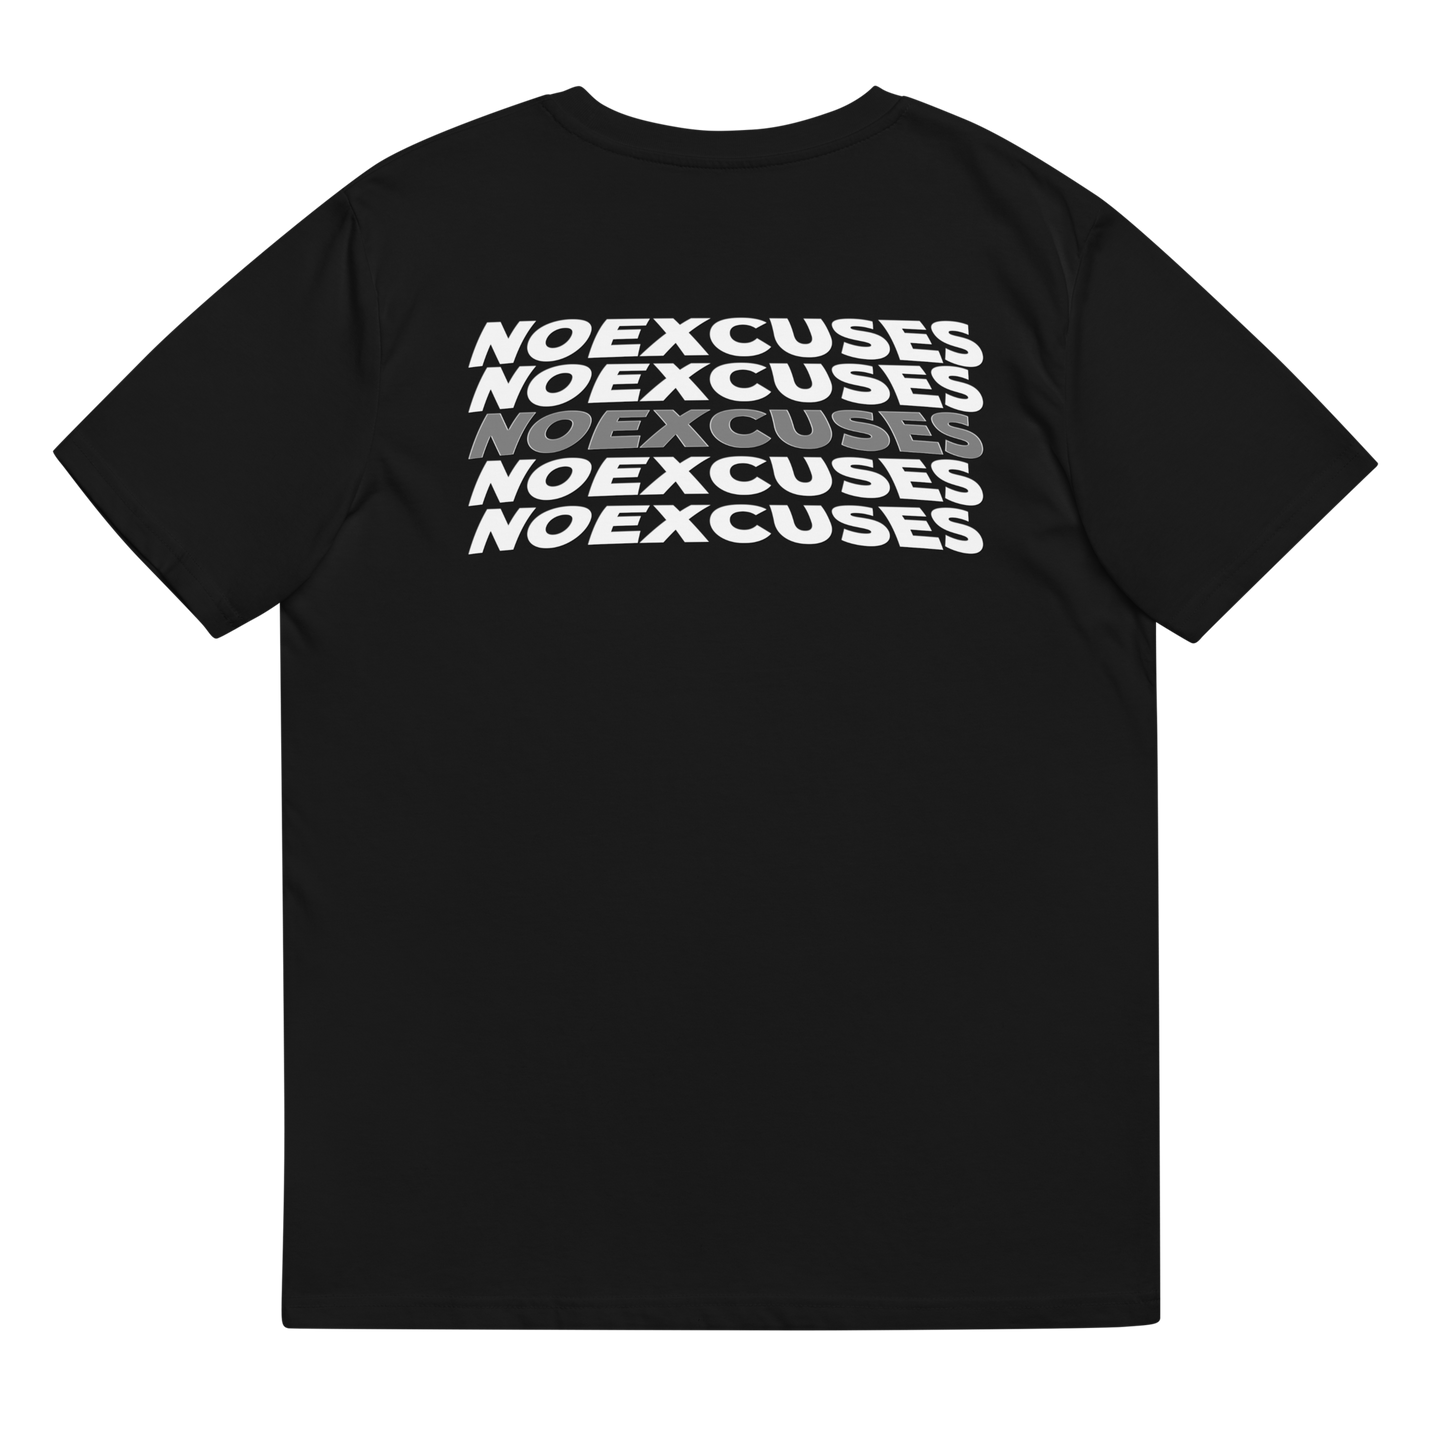 Box logo T-shirt "noexcuses"